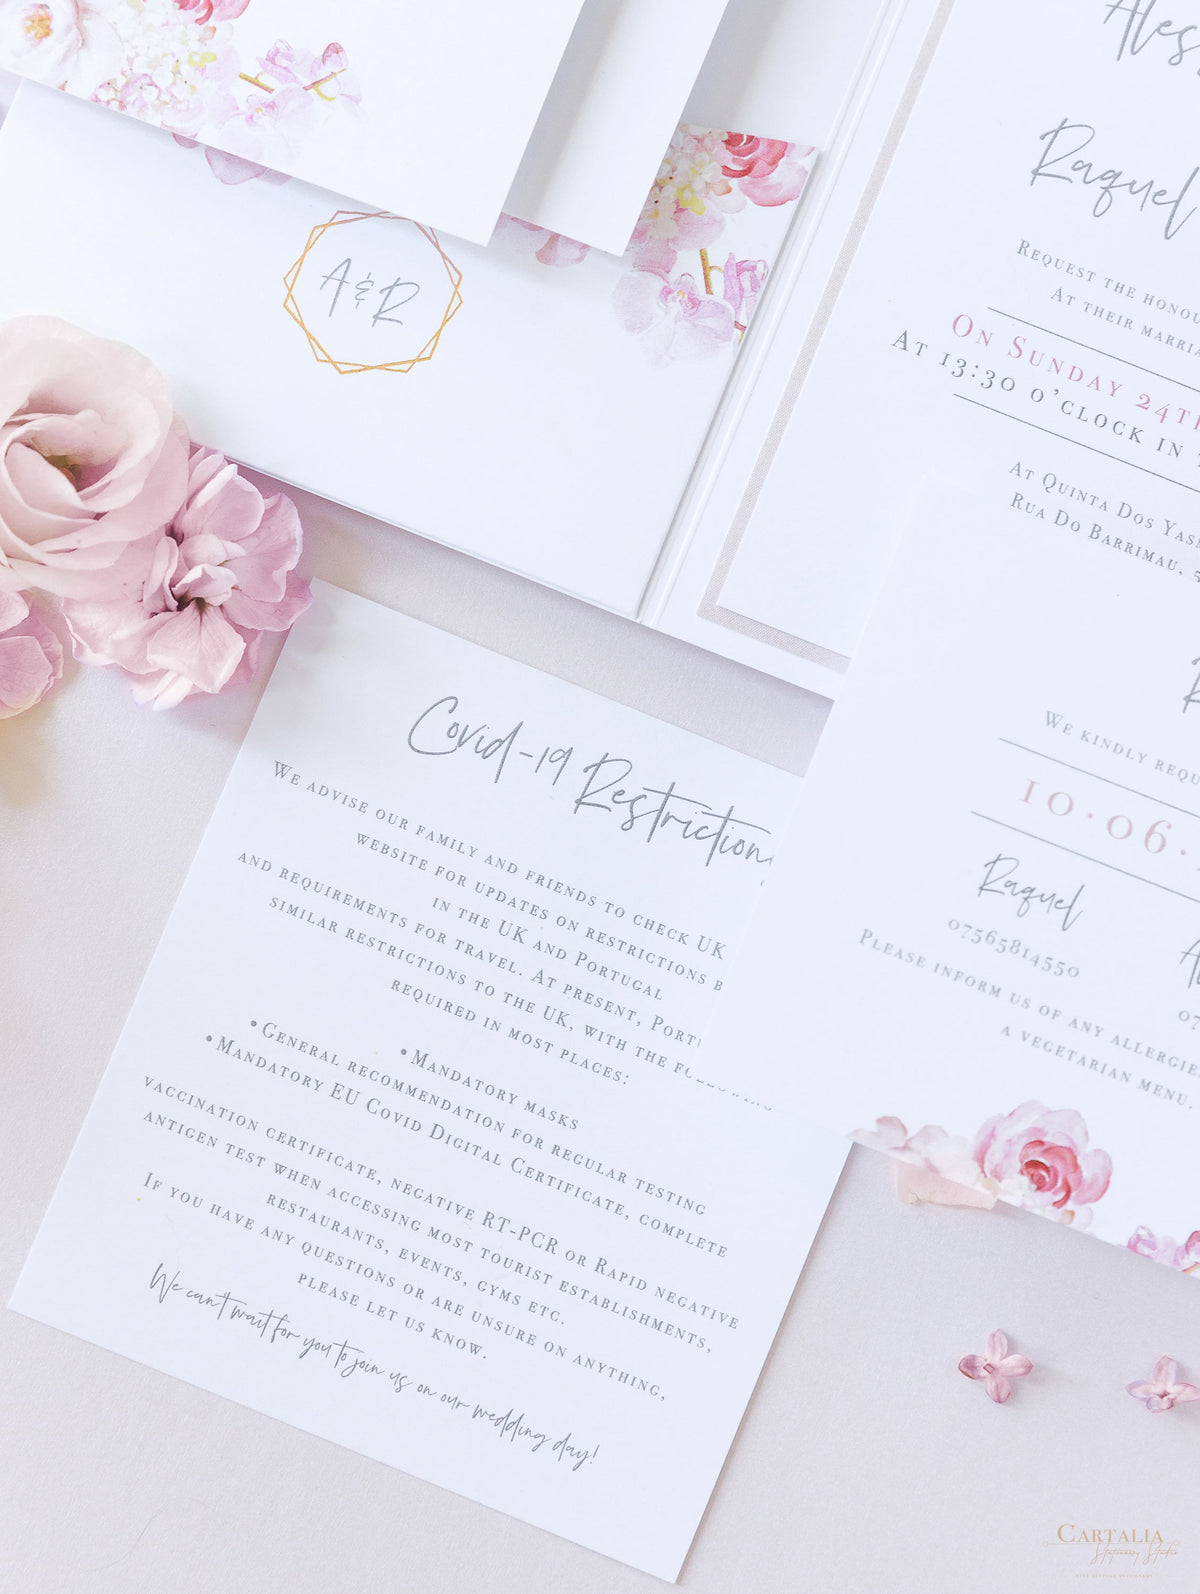 Invitación de boda estilo bolsillo floral de lujo en blanco y rosa con 4 tarjetas y papel de aluminio real